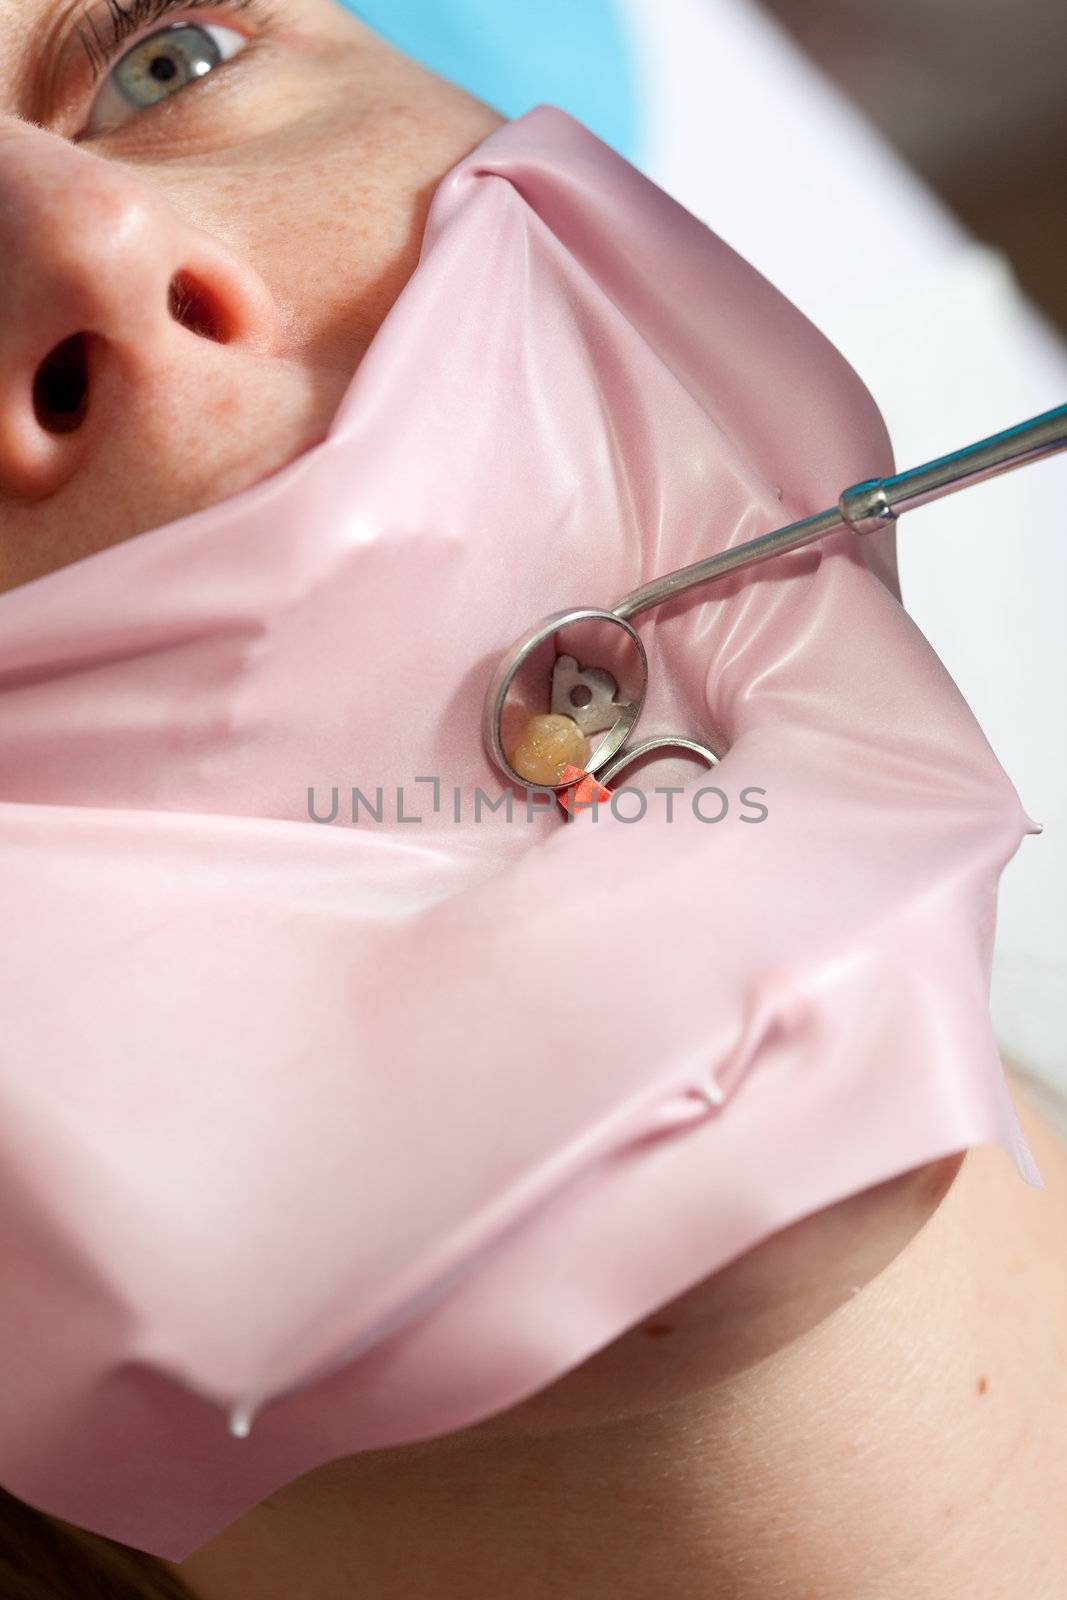 Dental treatment by Fotosmurf